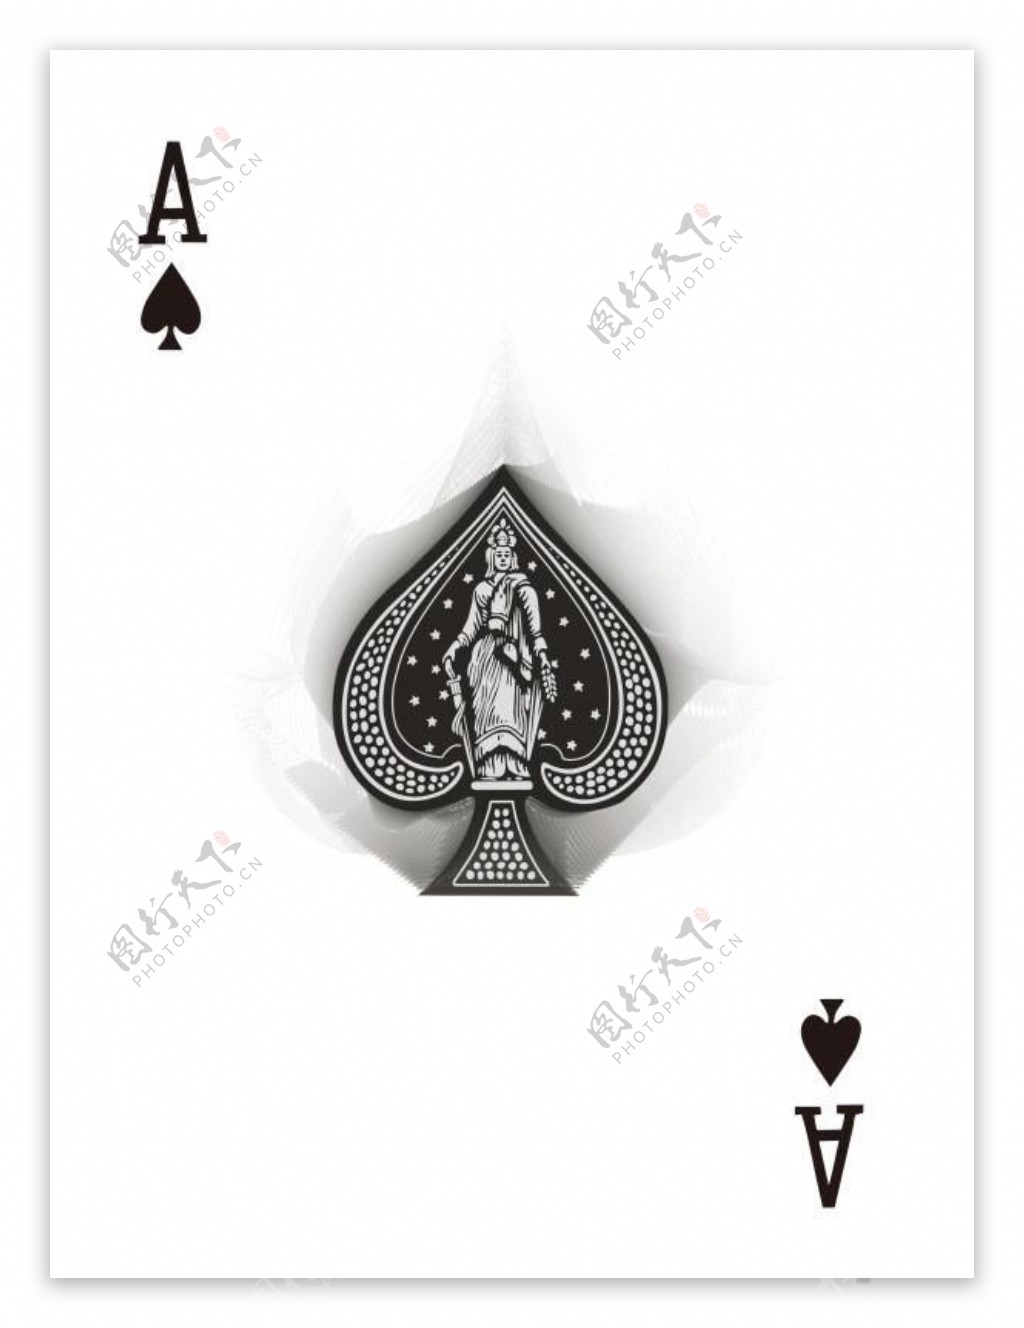 黑桃7张扑克牌 — 白色独立 库存照片. 图片 包括有 甲板, 背包, 设计, 赌博, 赌客, 招待, 纸张 - 172565820